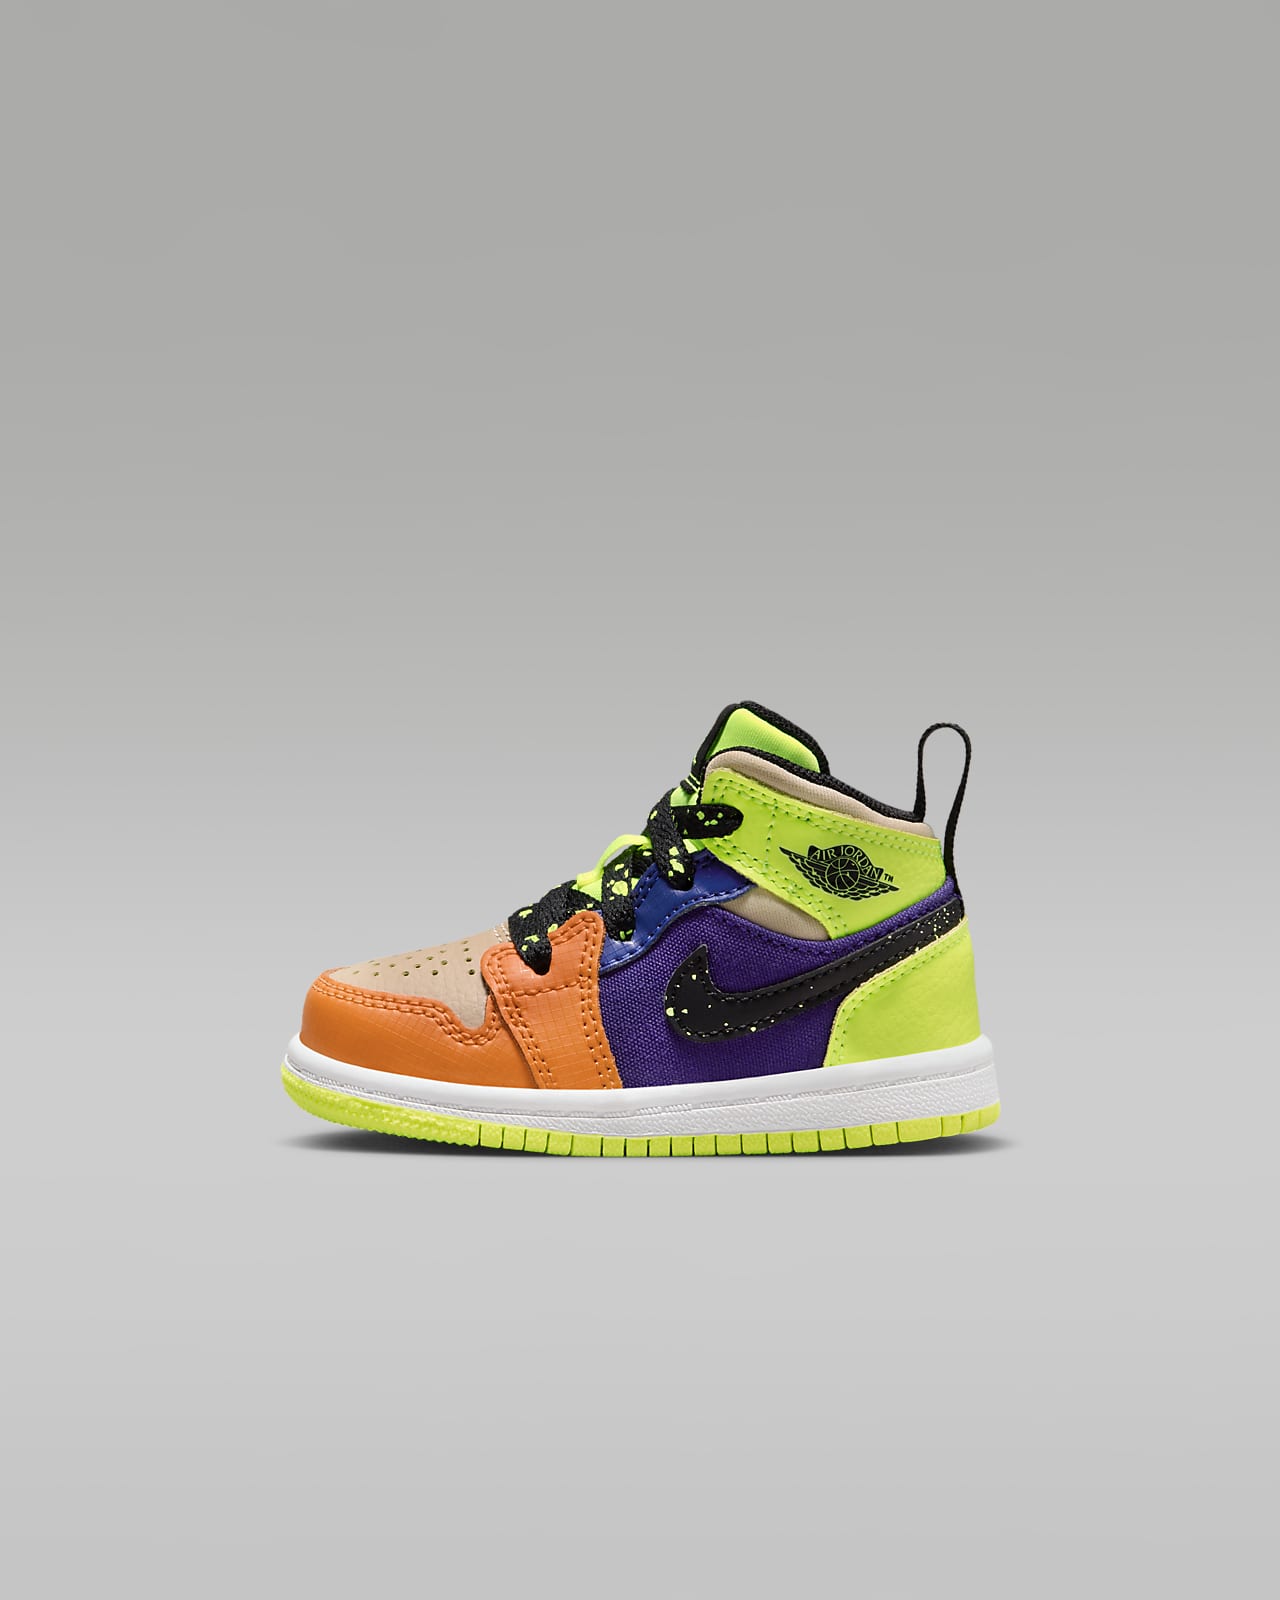 Jordan 3 Retro Baby/Toddler Shoes. Nike LU